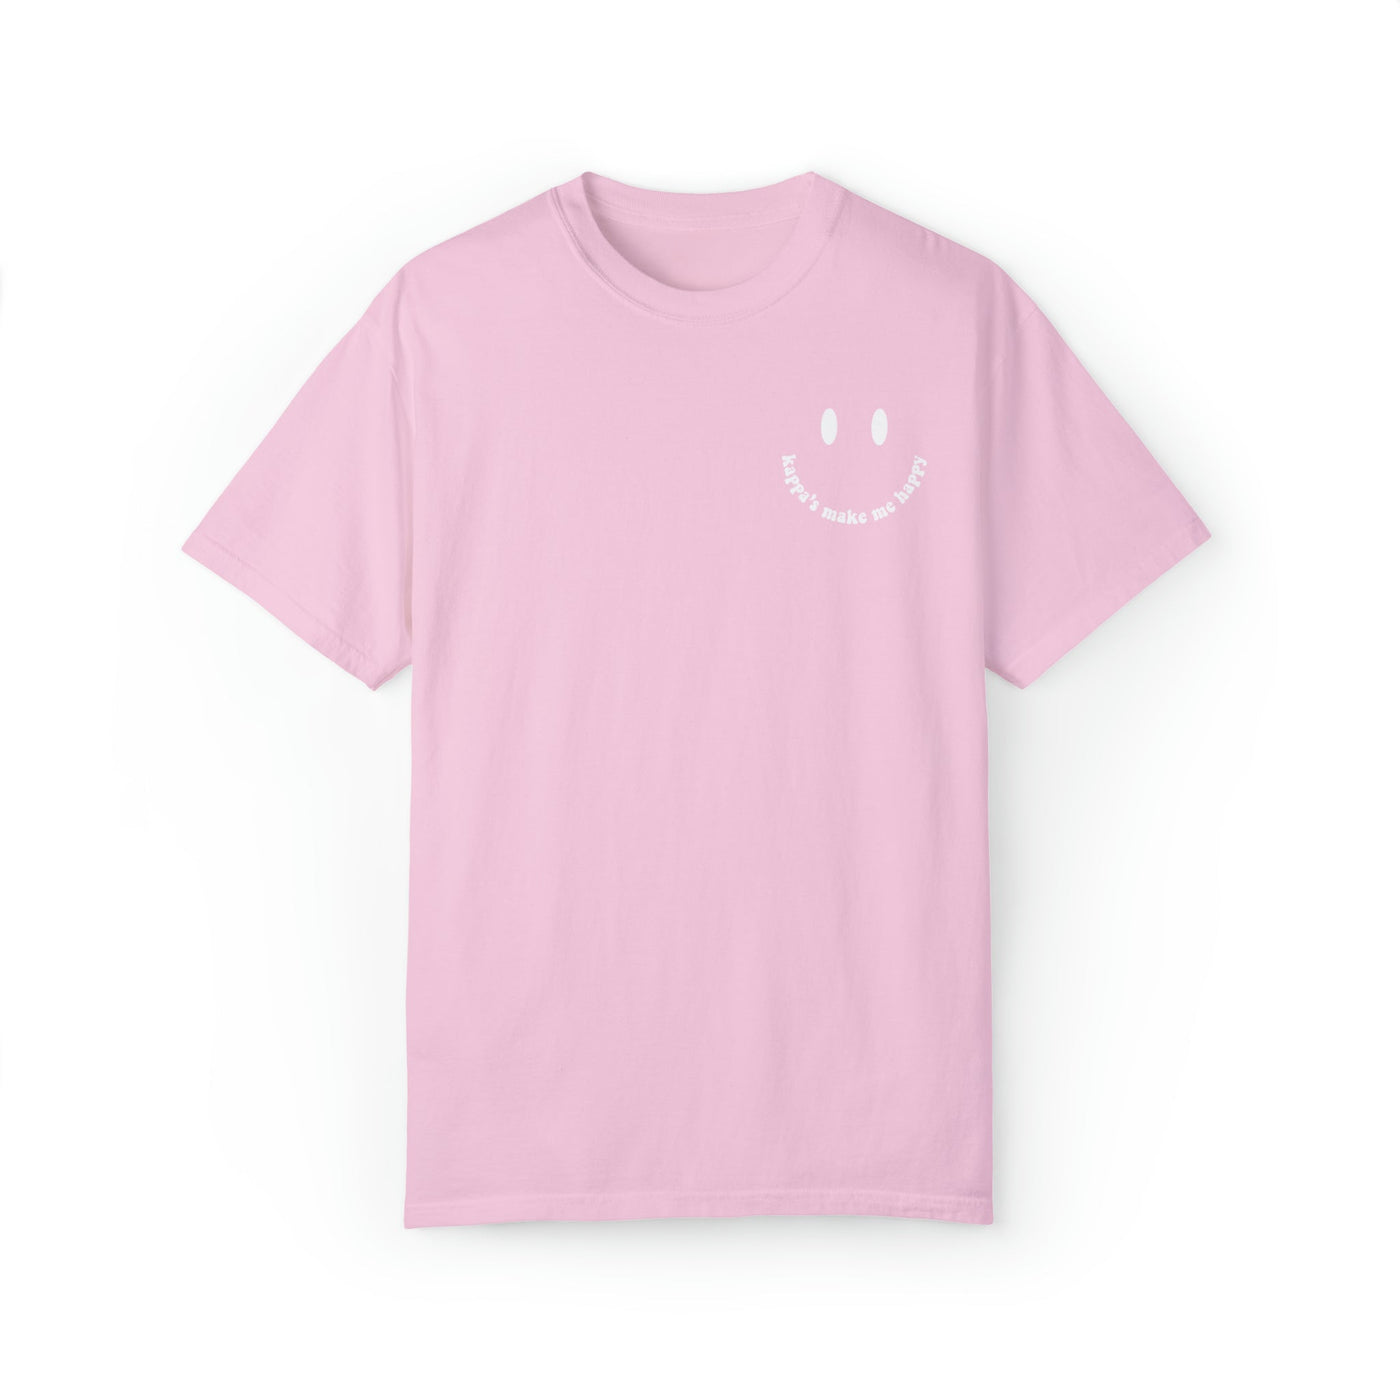 Kappa Kappa Gamma's Make Me Happy Sorority Comfy T-shirt